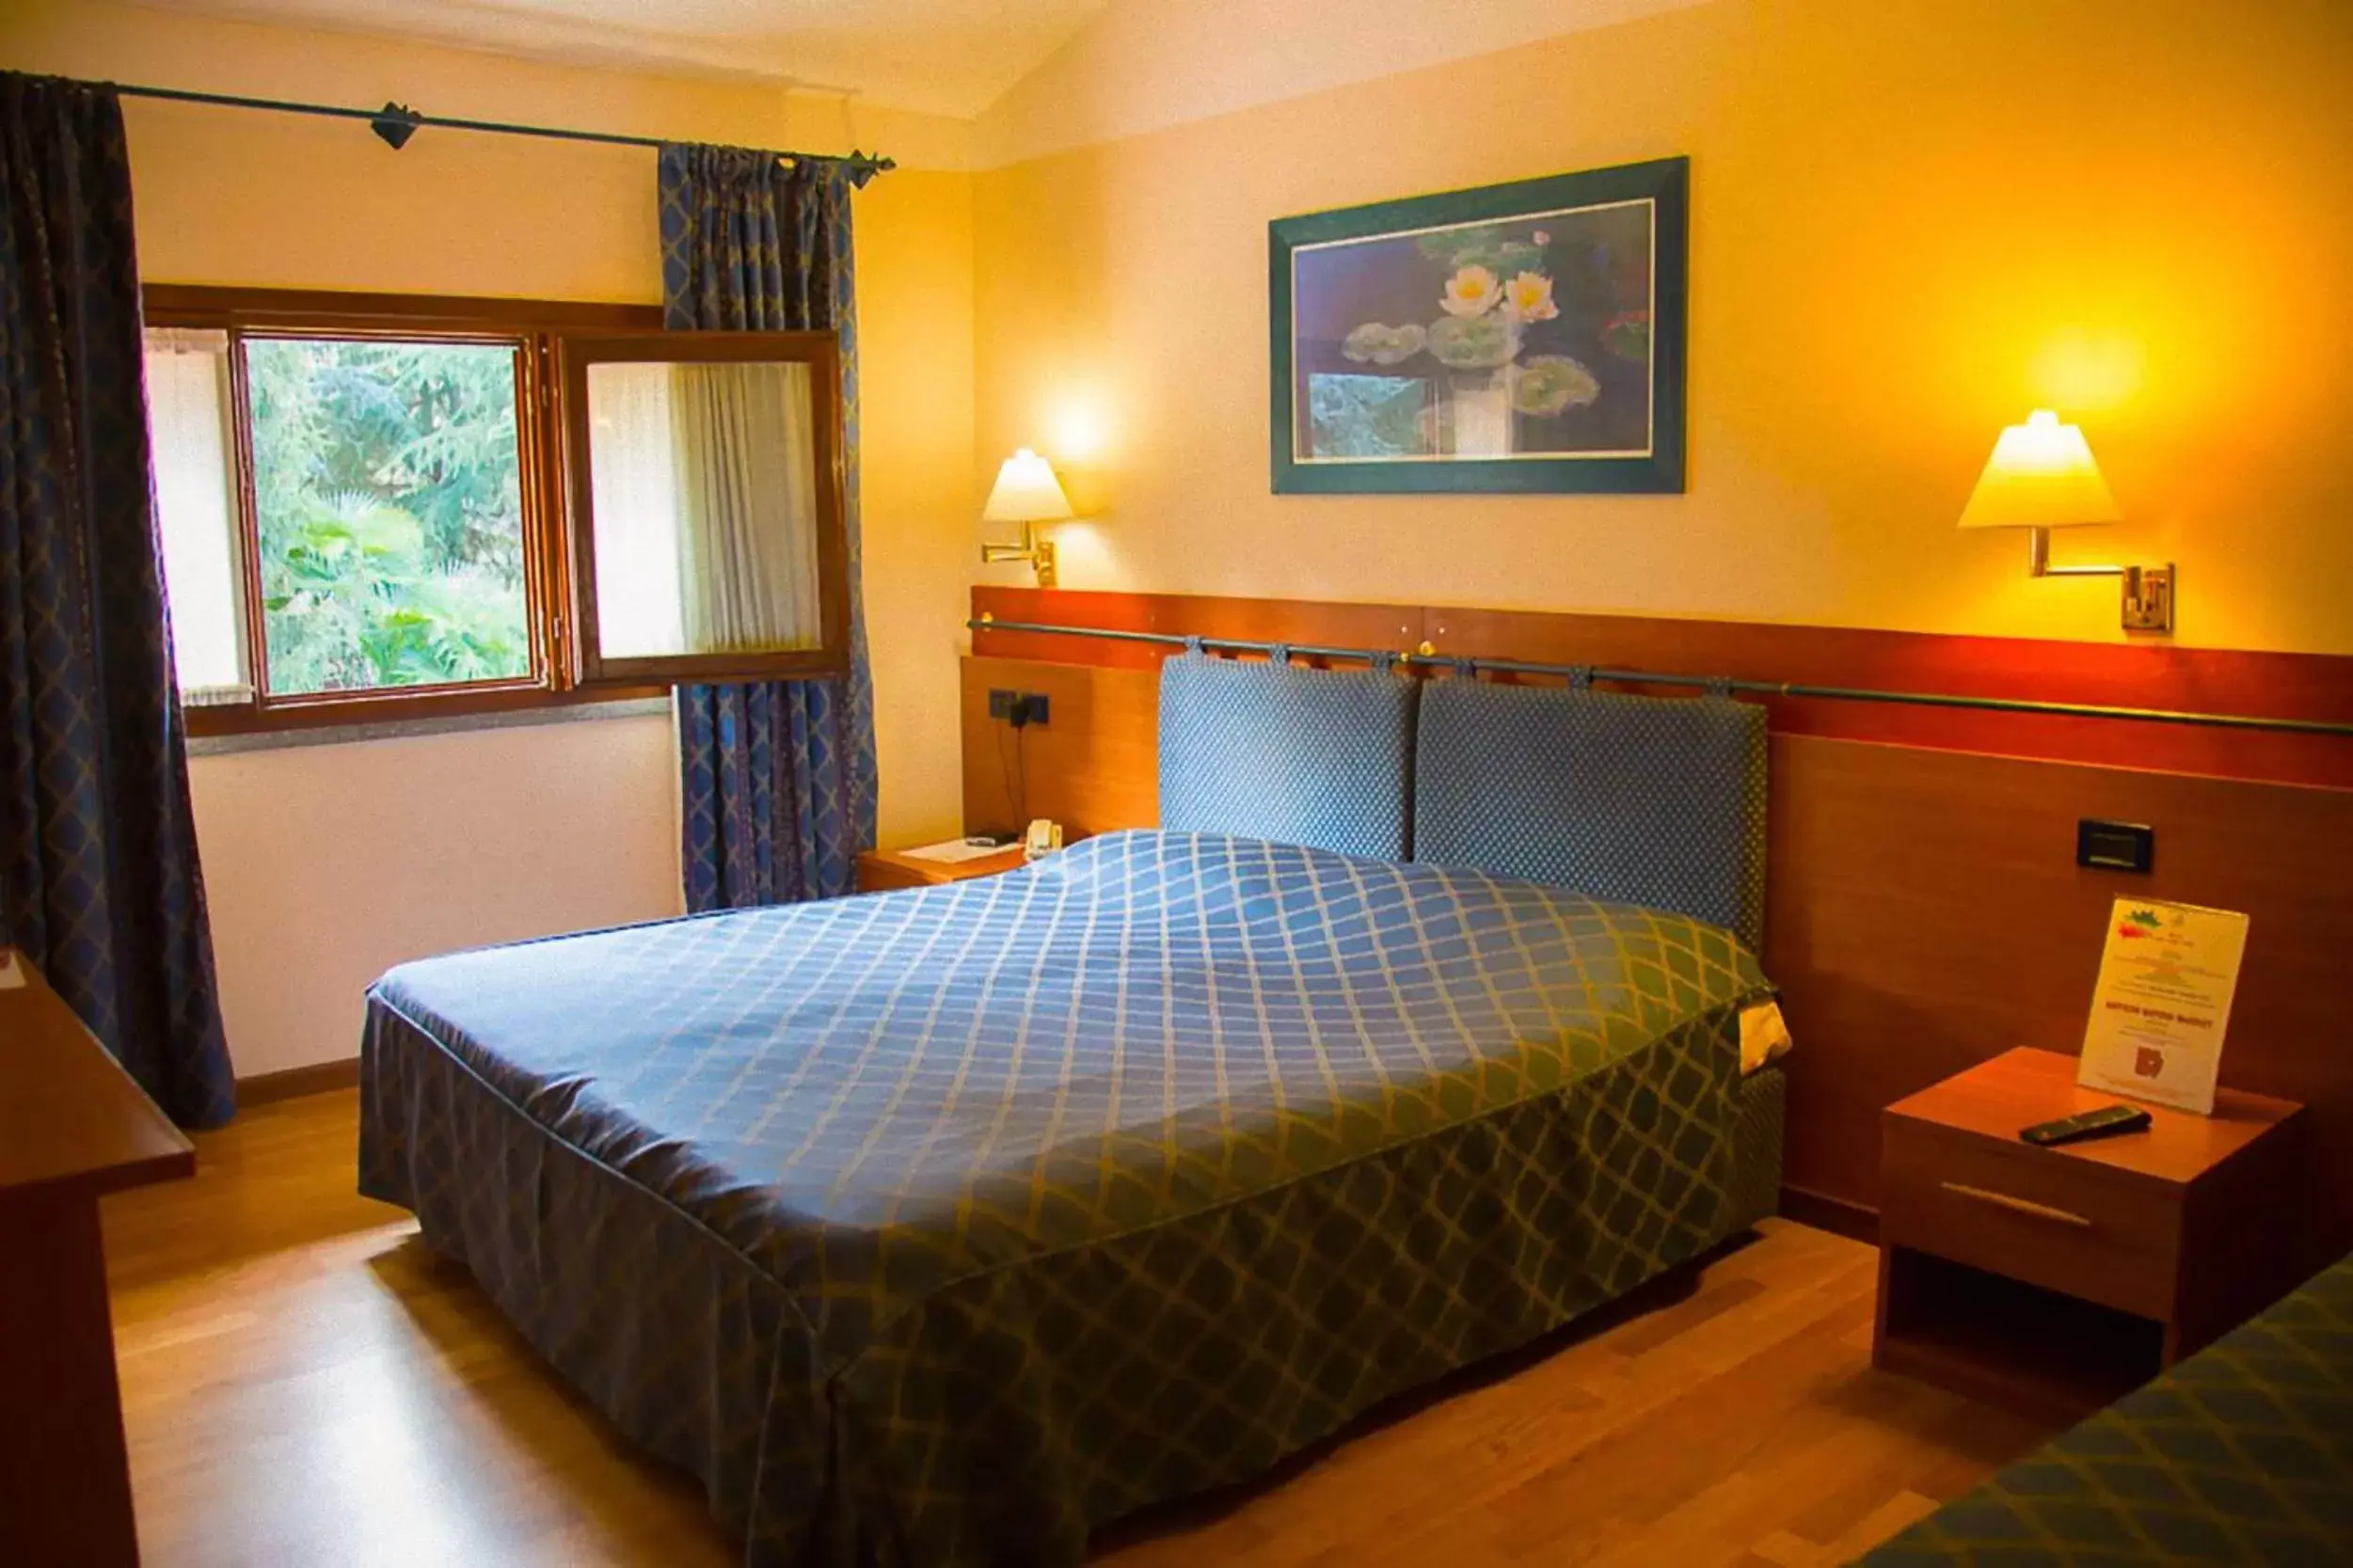 Bed, Room Photo in Hotel Ristorante La Perla